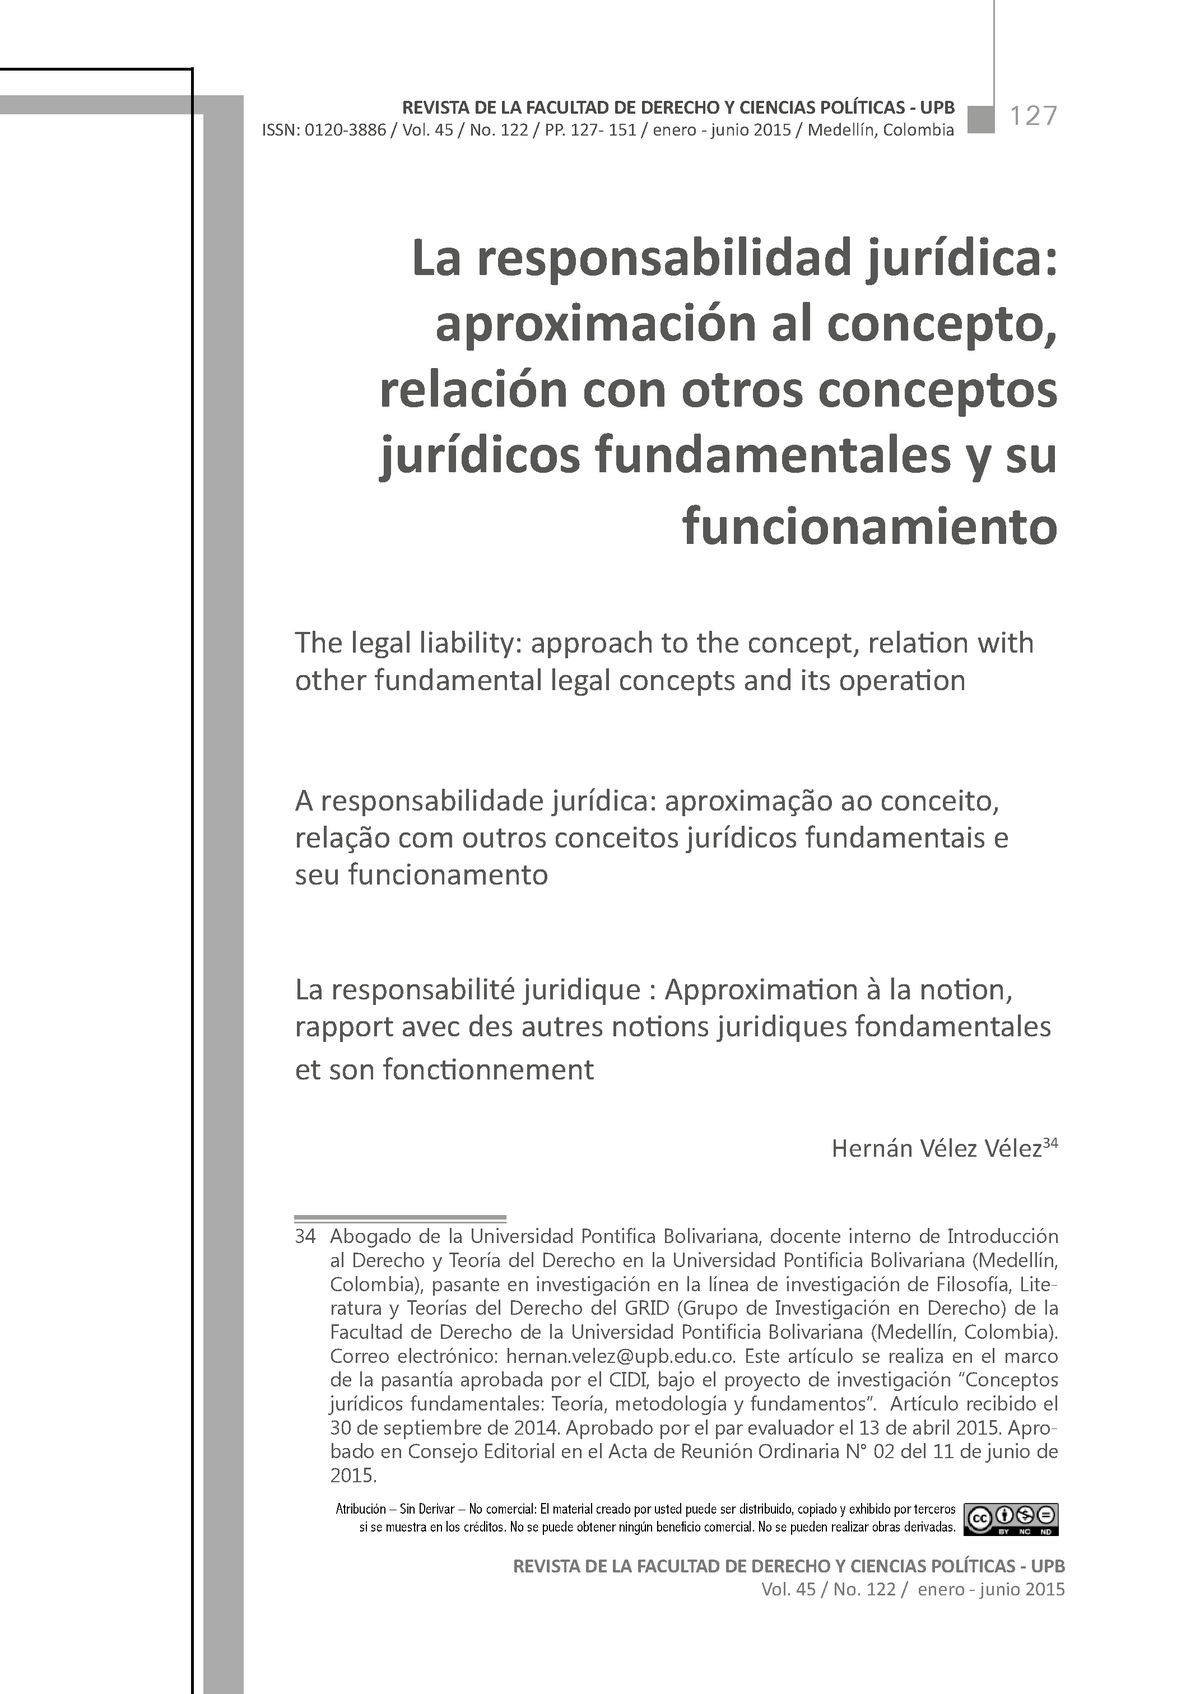 Dialnet-La Responsabilidad Juridica-5212475 - 127 REVISTA DE LA FACULTAD DE  DERECHO Y CIENCIAS - StuDocu